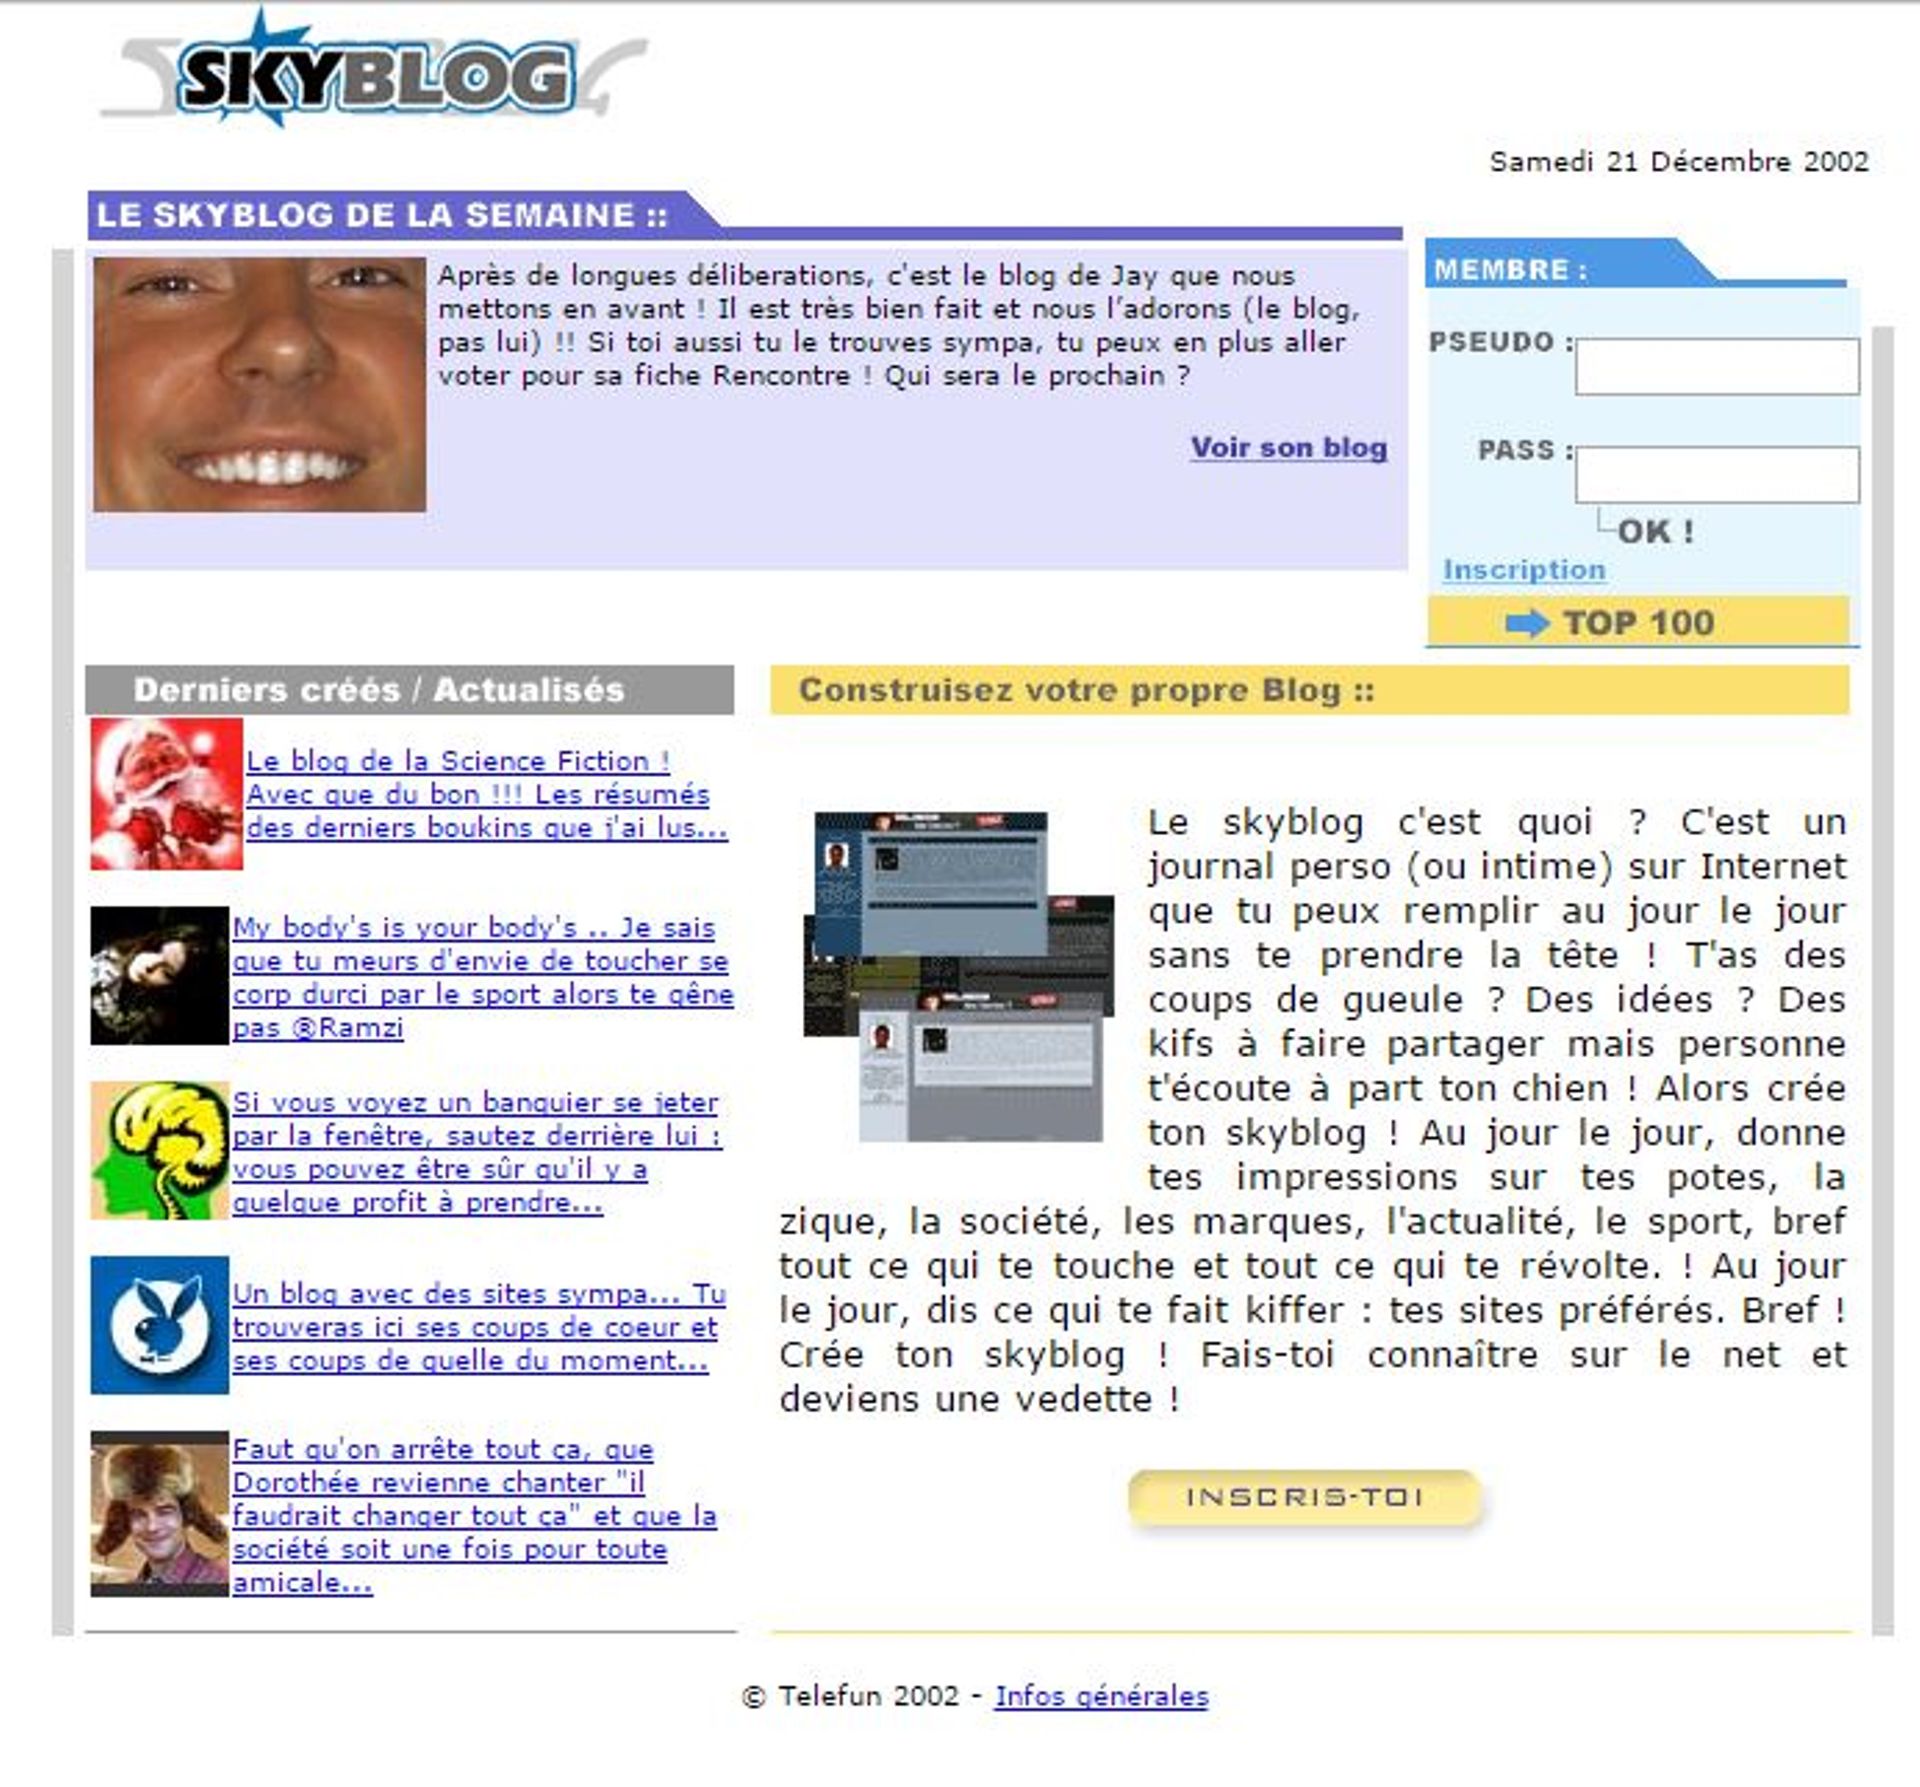 La toute première capture d'écran de la page d'accueil de Skyblog.com conservée par la Wayback Machine